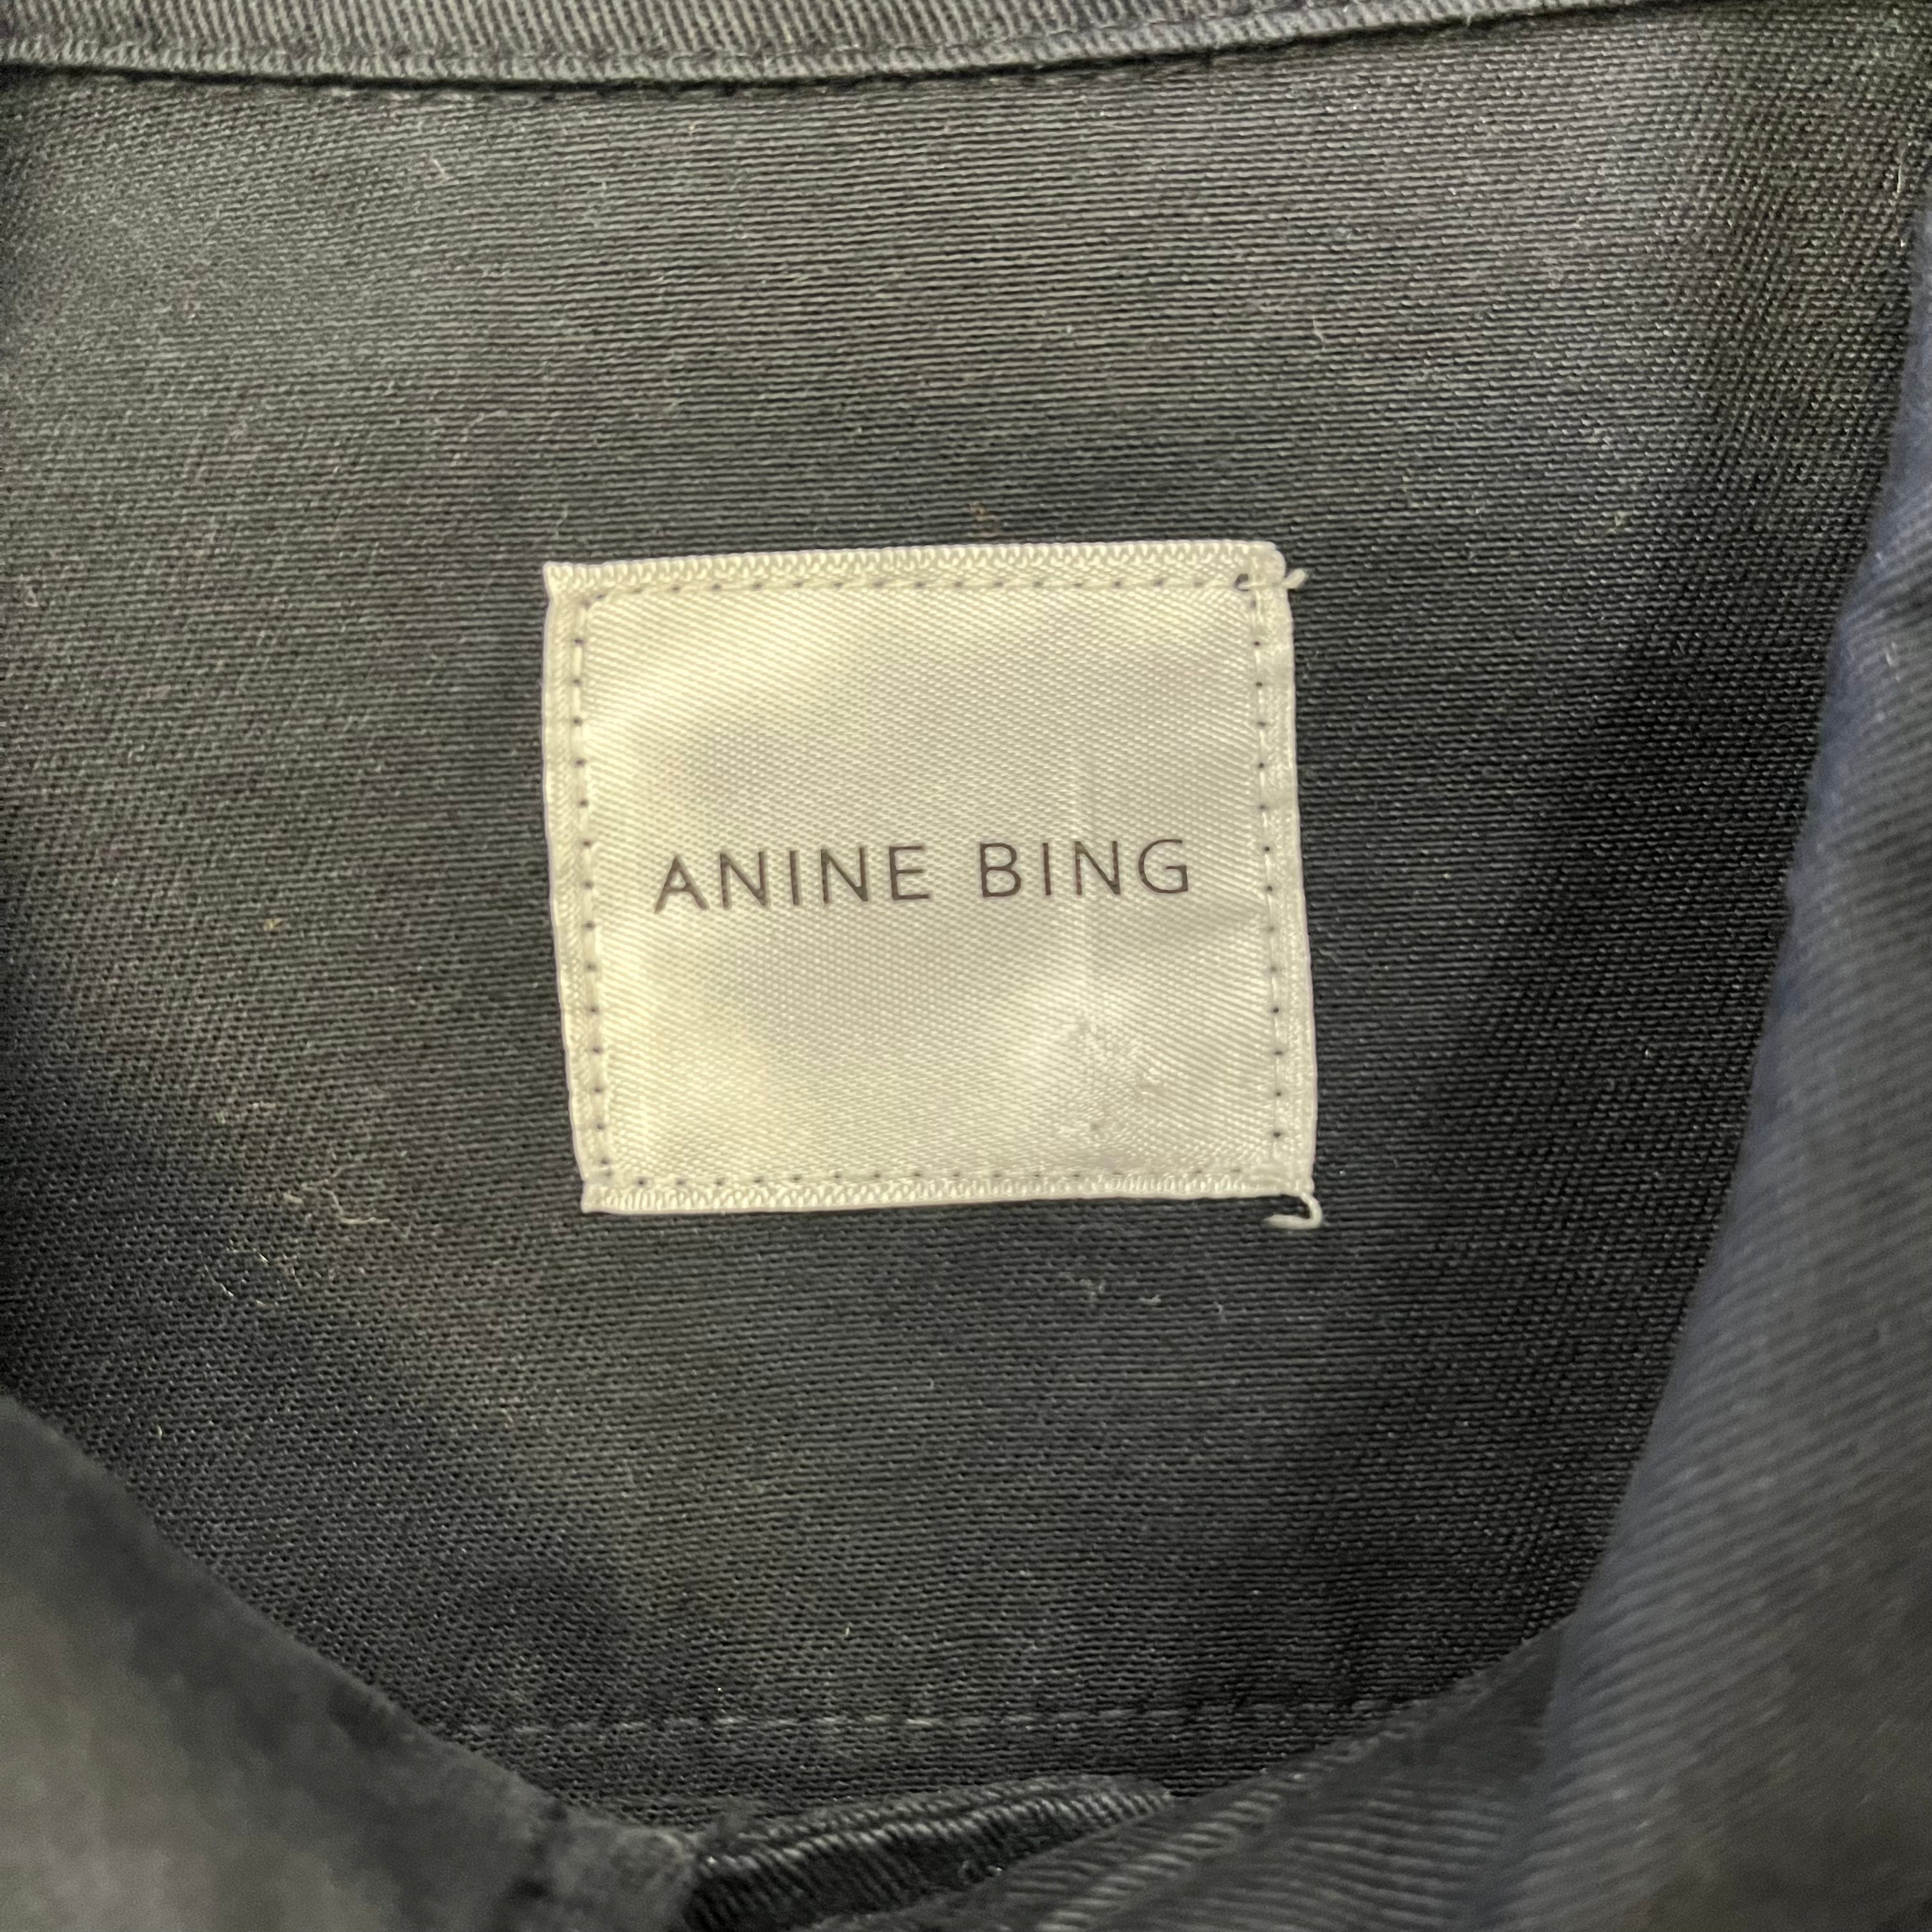 Anine Bing Women’s Black Jacket